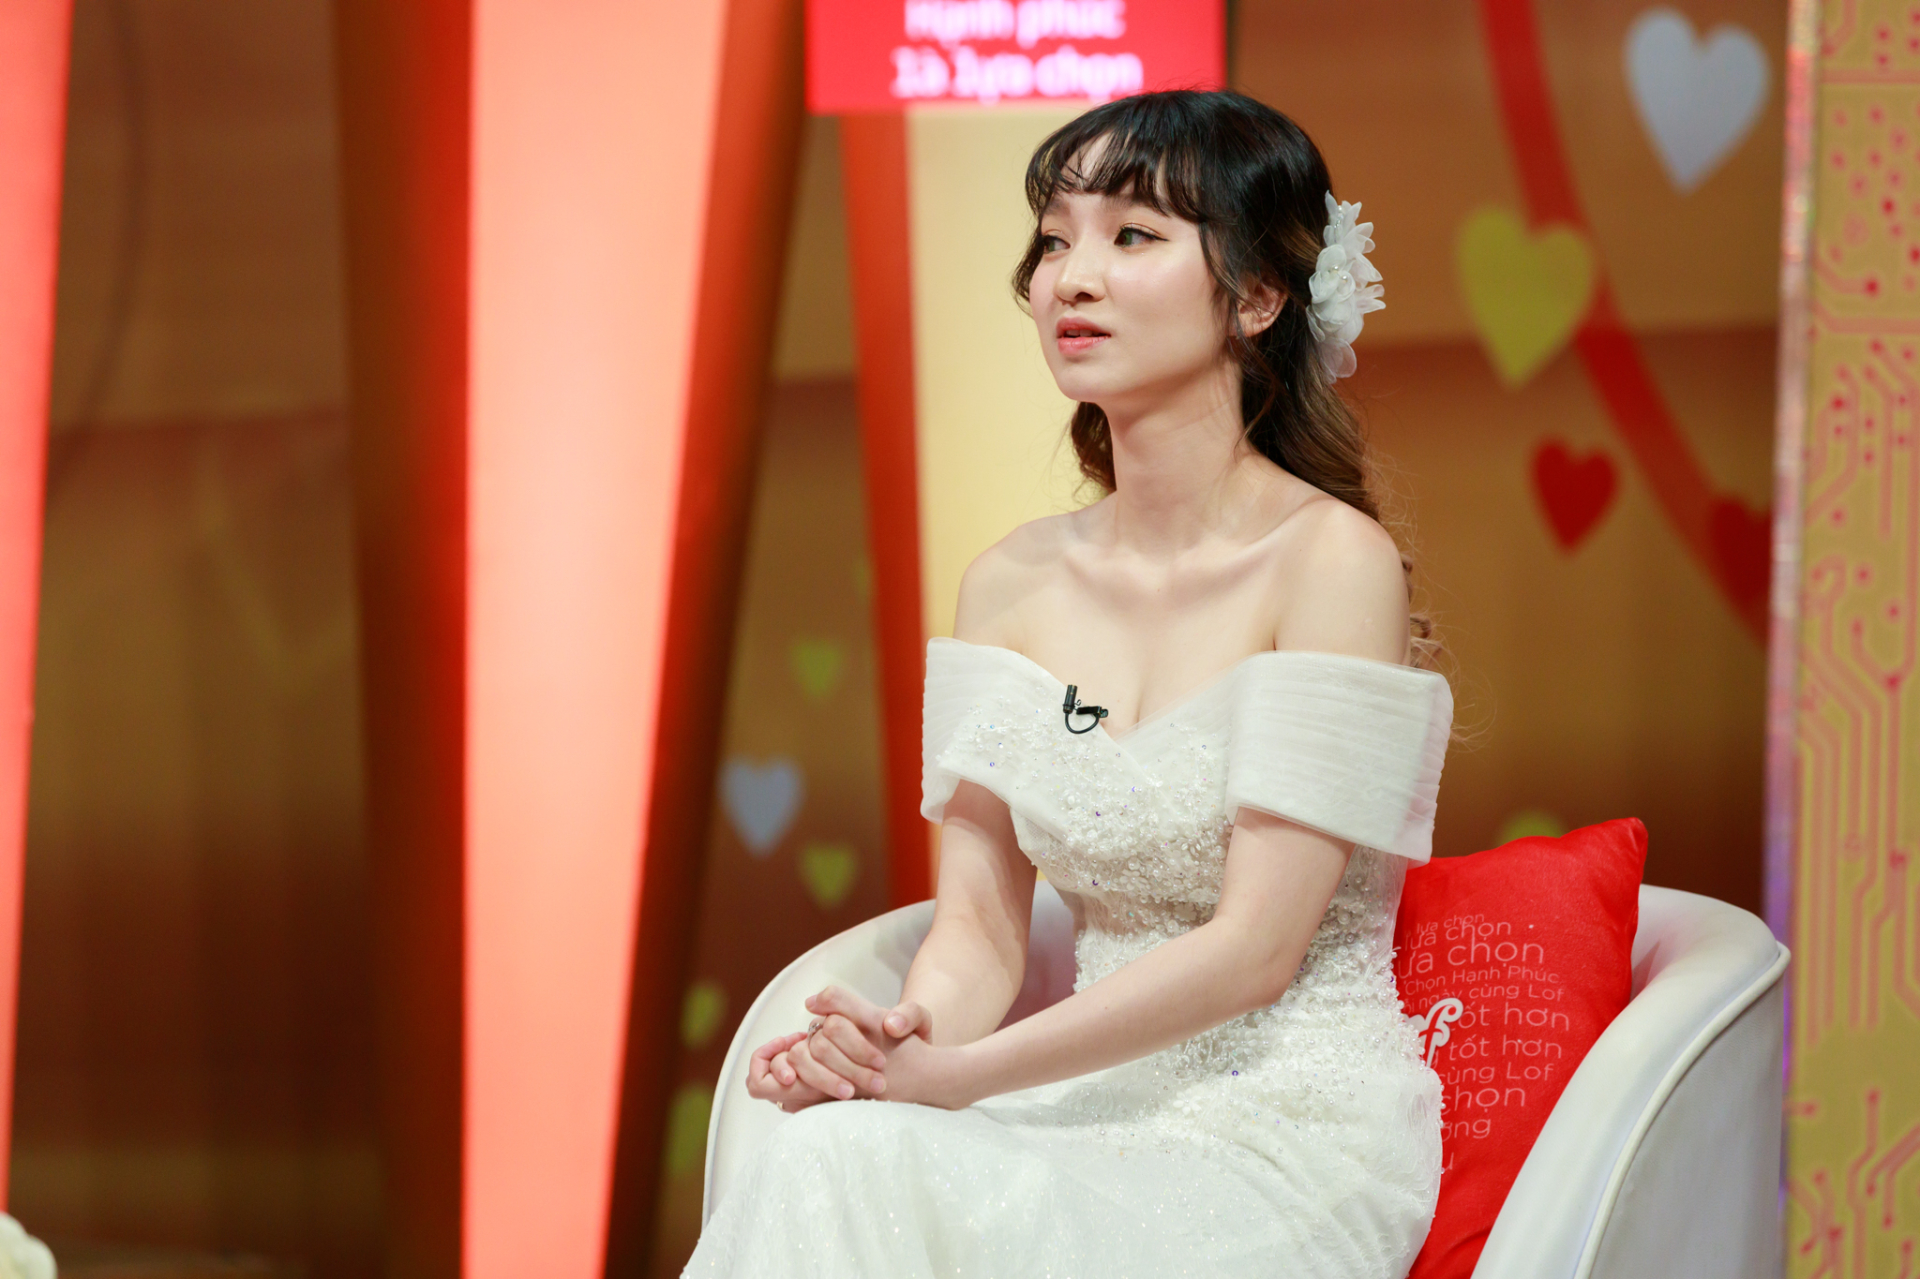 Diễn viên Ngọc Thuận lần đầu tiết lộ cuộc sống hôn nhân với vợ đẹp kém 18 tuổi - ảnh 4